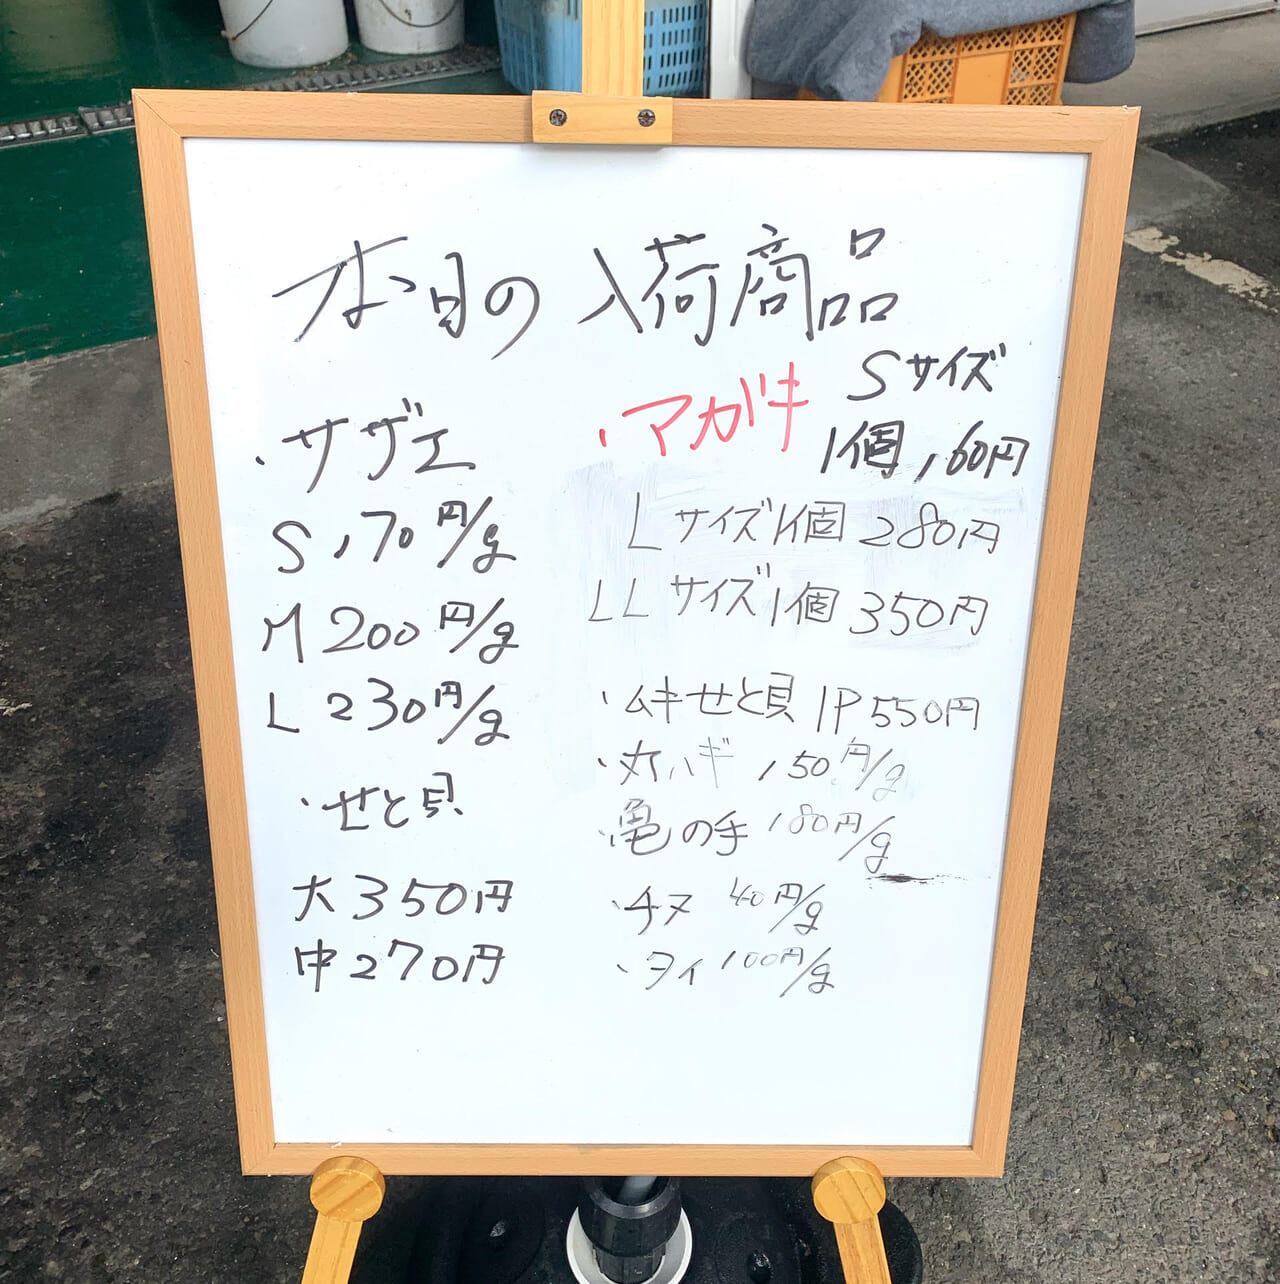 天保山町にある「今治おさかな市場」では新鮮な魚介類を買うことができます!!